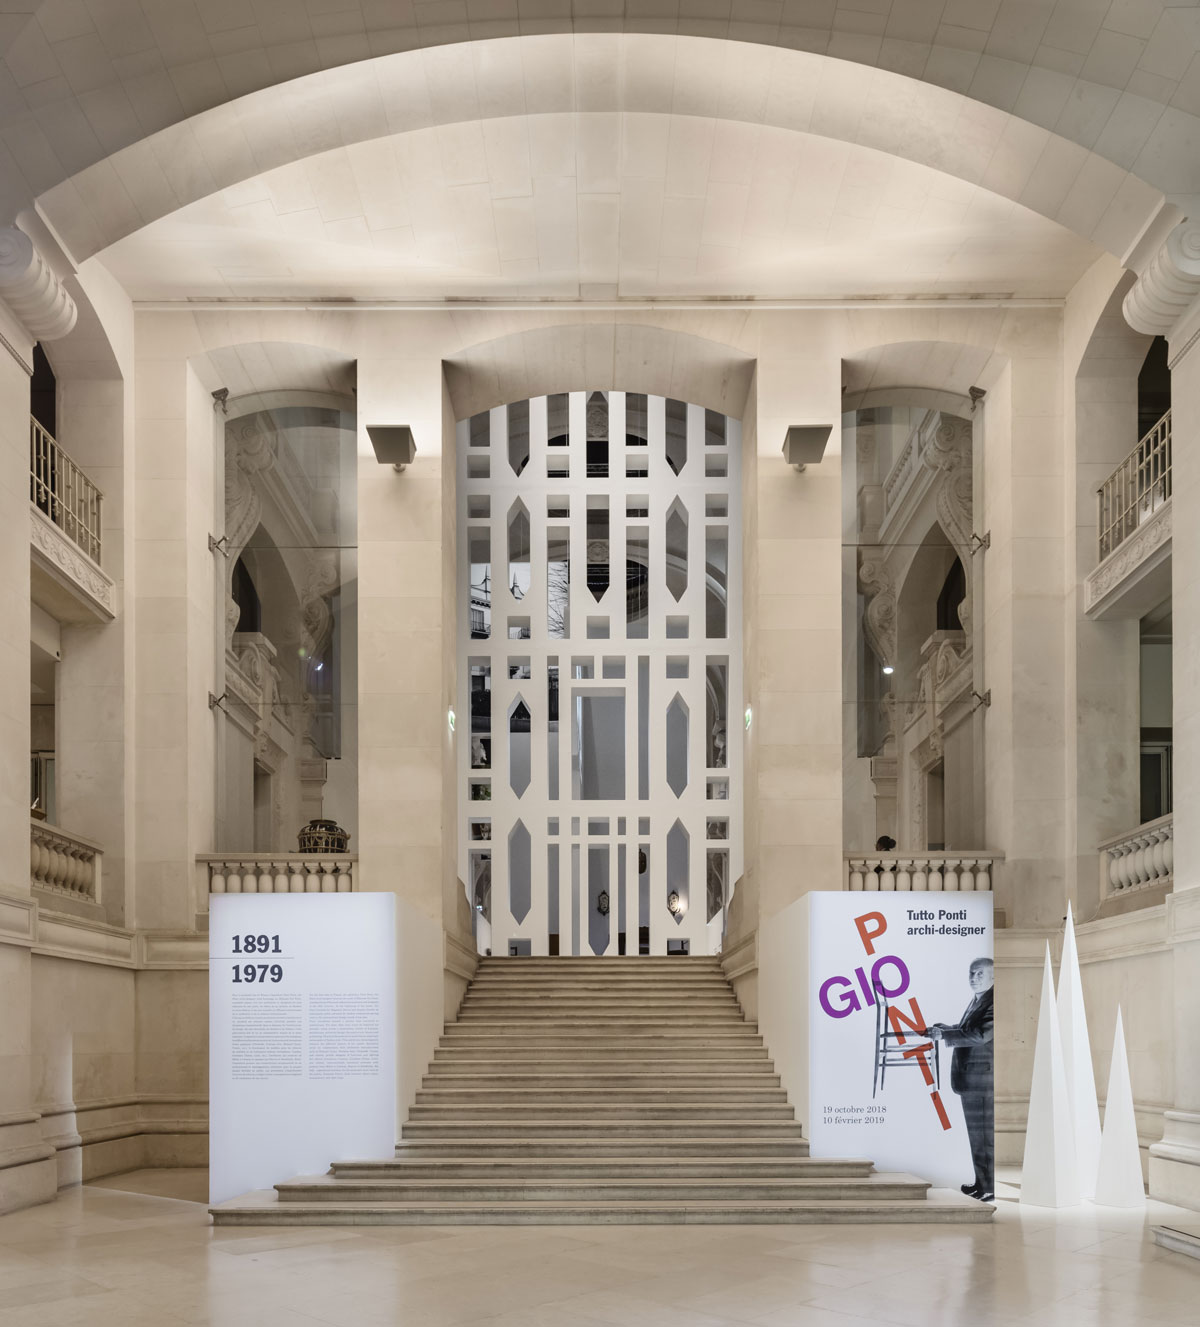 MAD, Musée des Arts Décoratifs, exposition " Tutto Ponti, Gio Ponti  Archi-Designer", 2018, Paris.